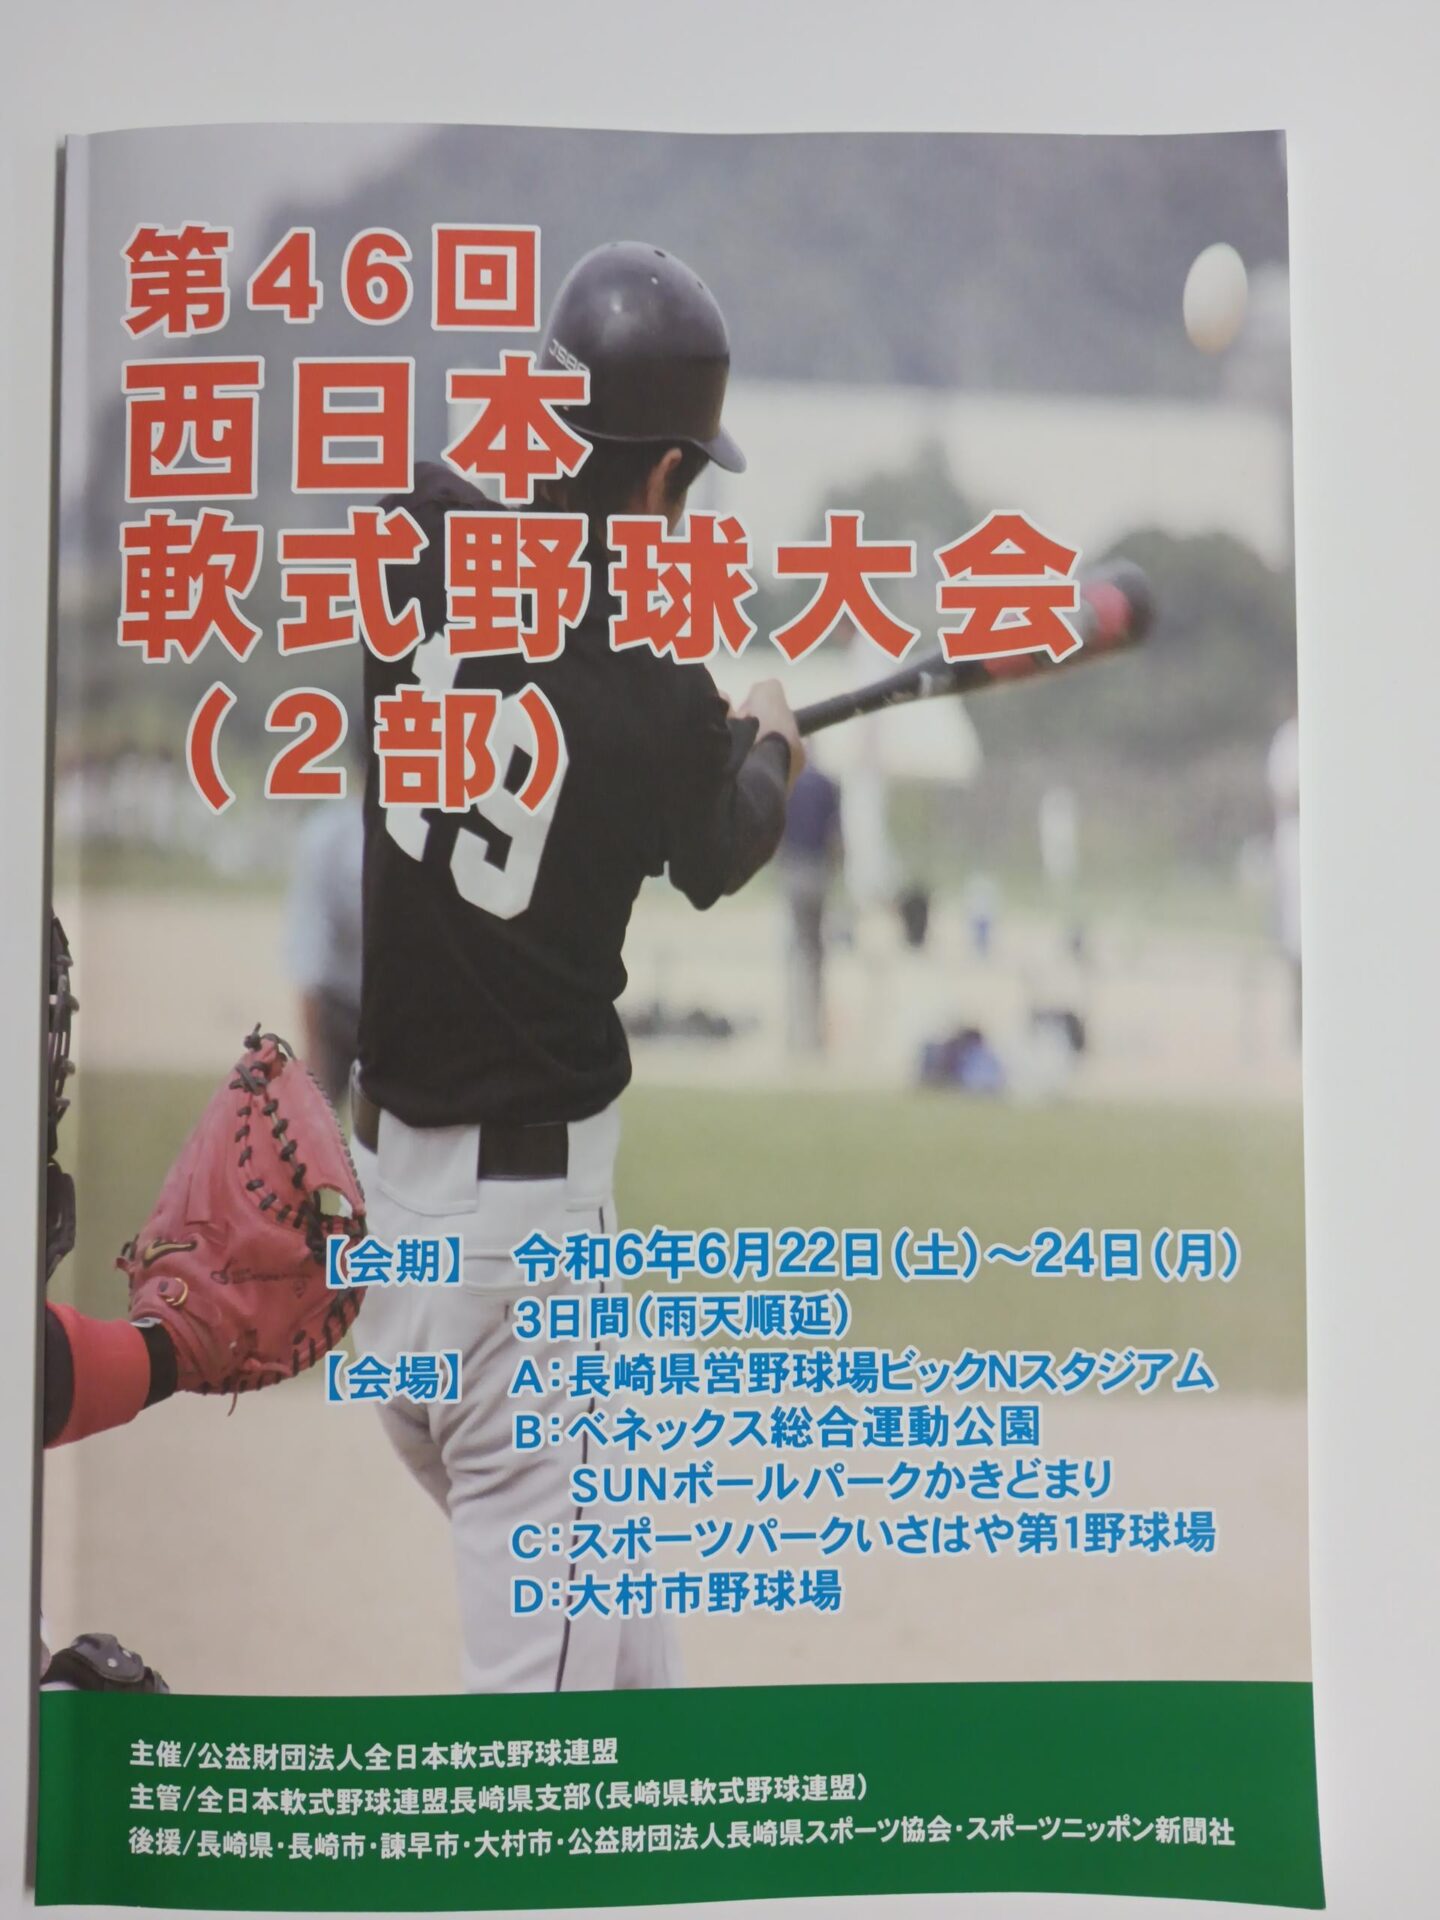 第46回 西日本軟式野球大会(2部)